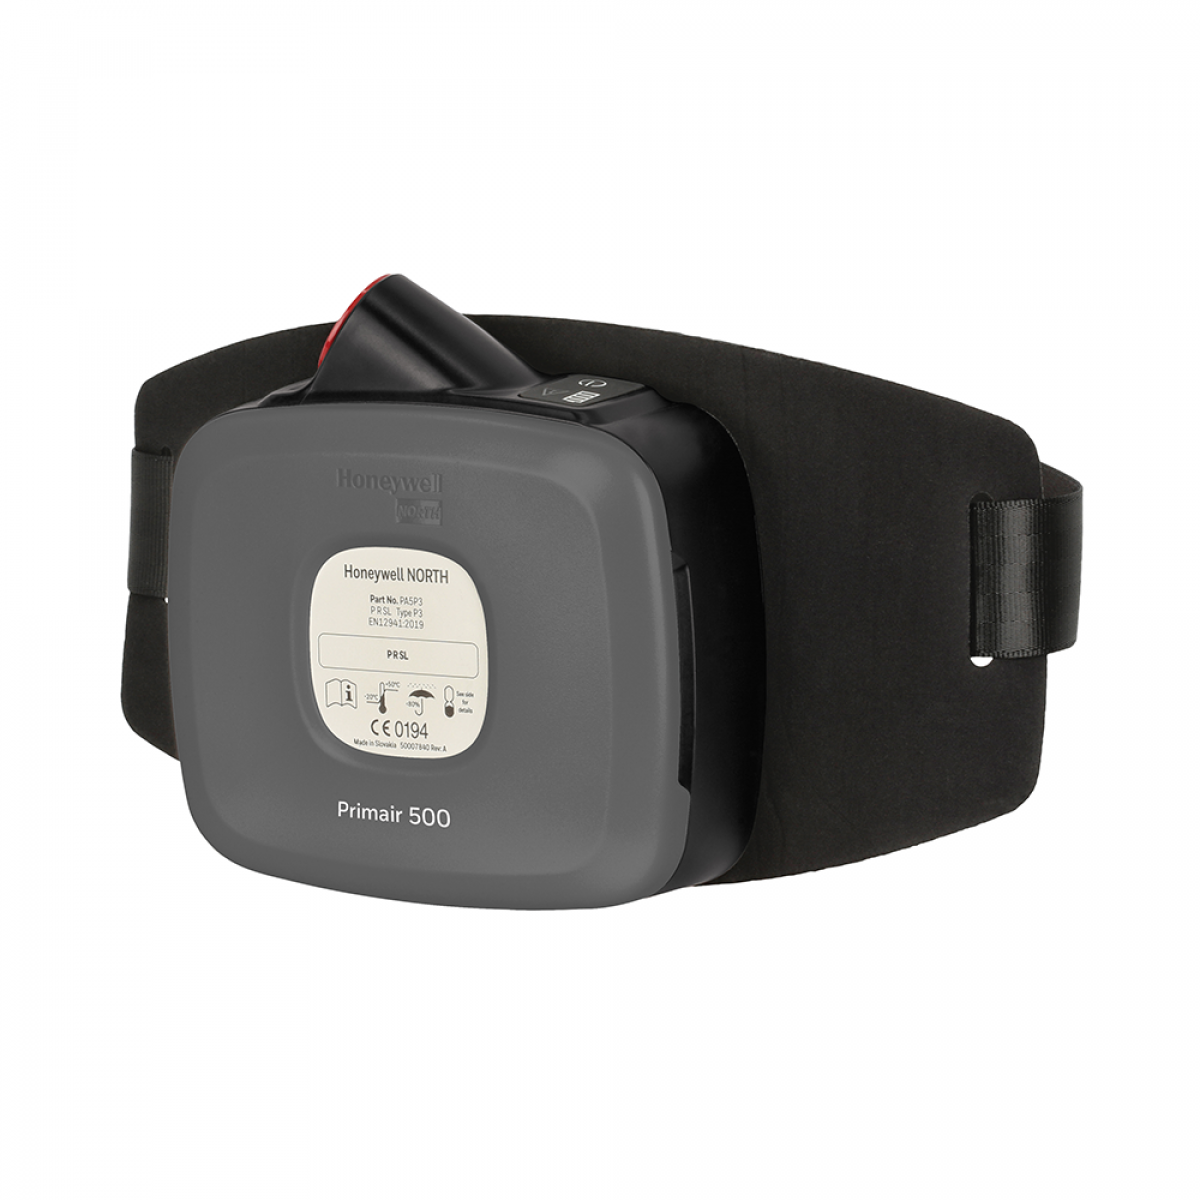 Honeywell PA500 reusable respirator with comfortband